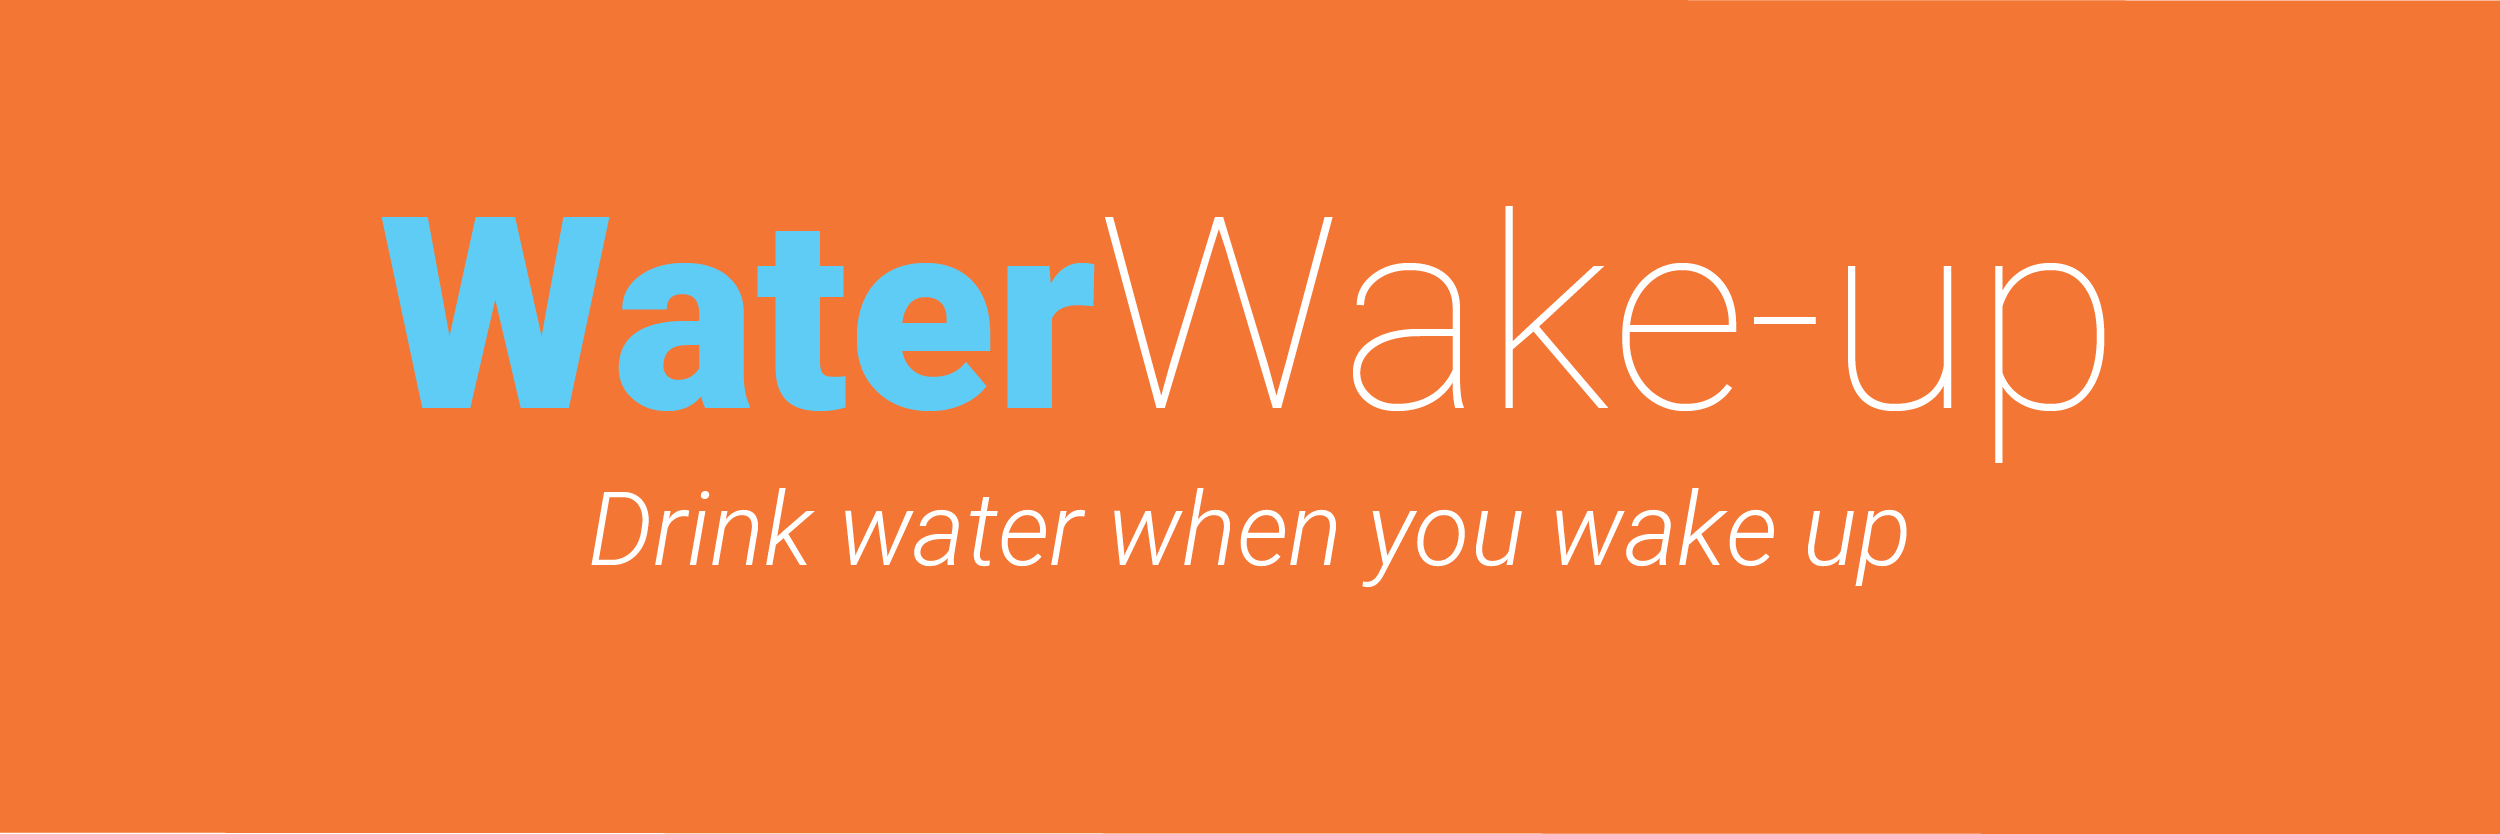 Water Wake-up-01